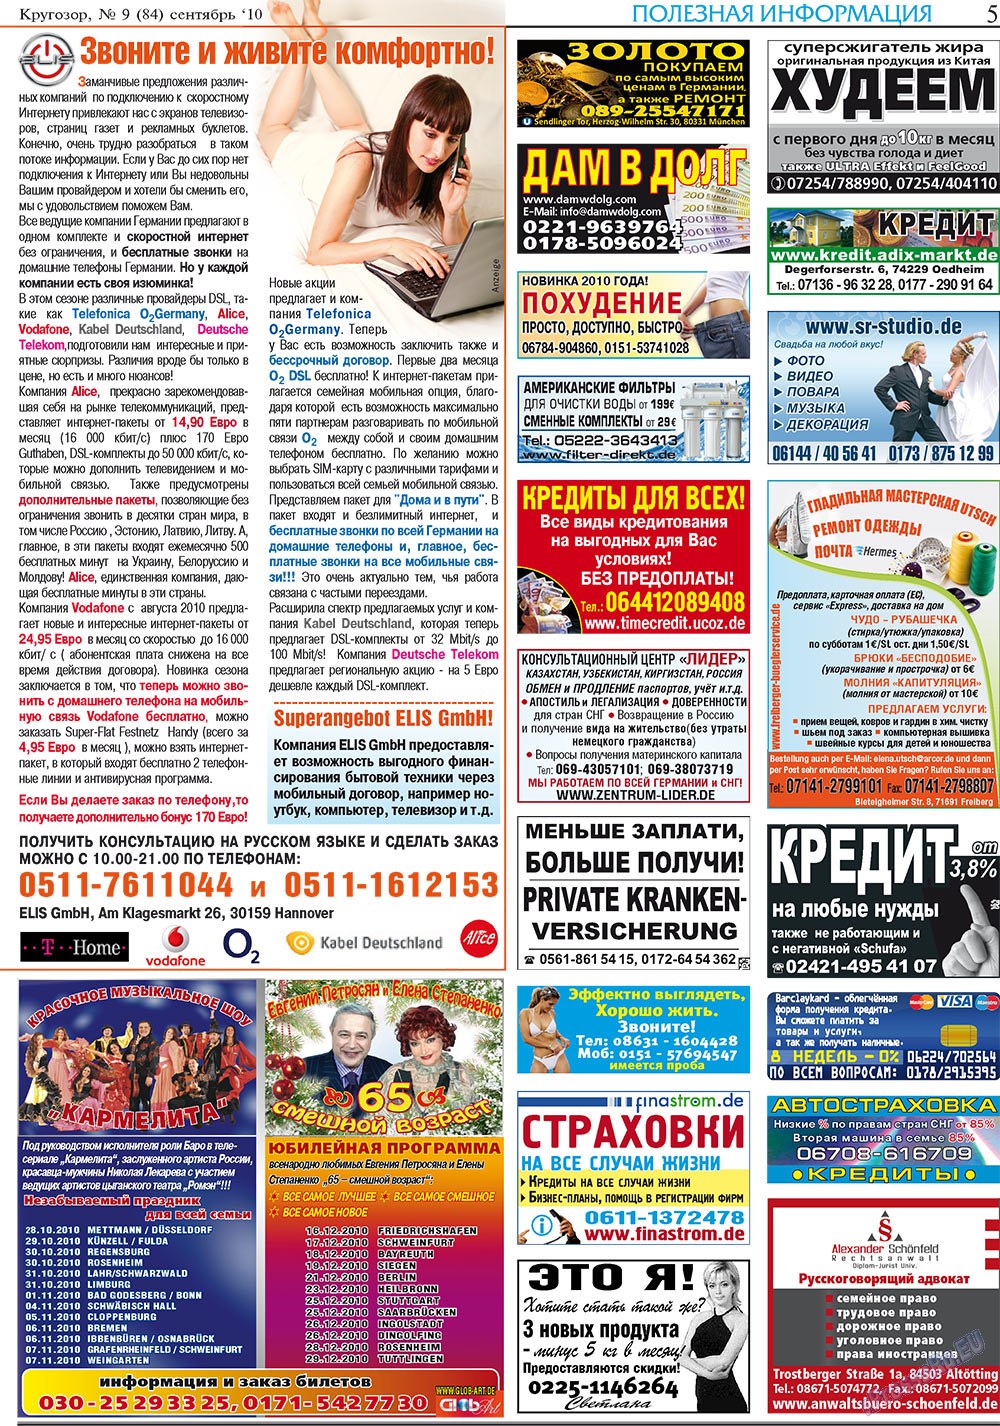 Кругозор плюс!, газета. 2010 №9 стр.5